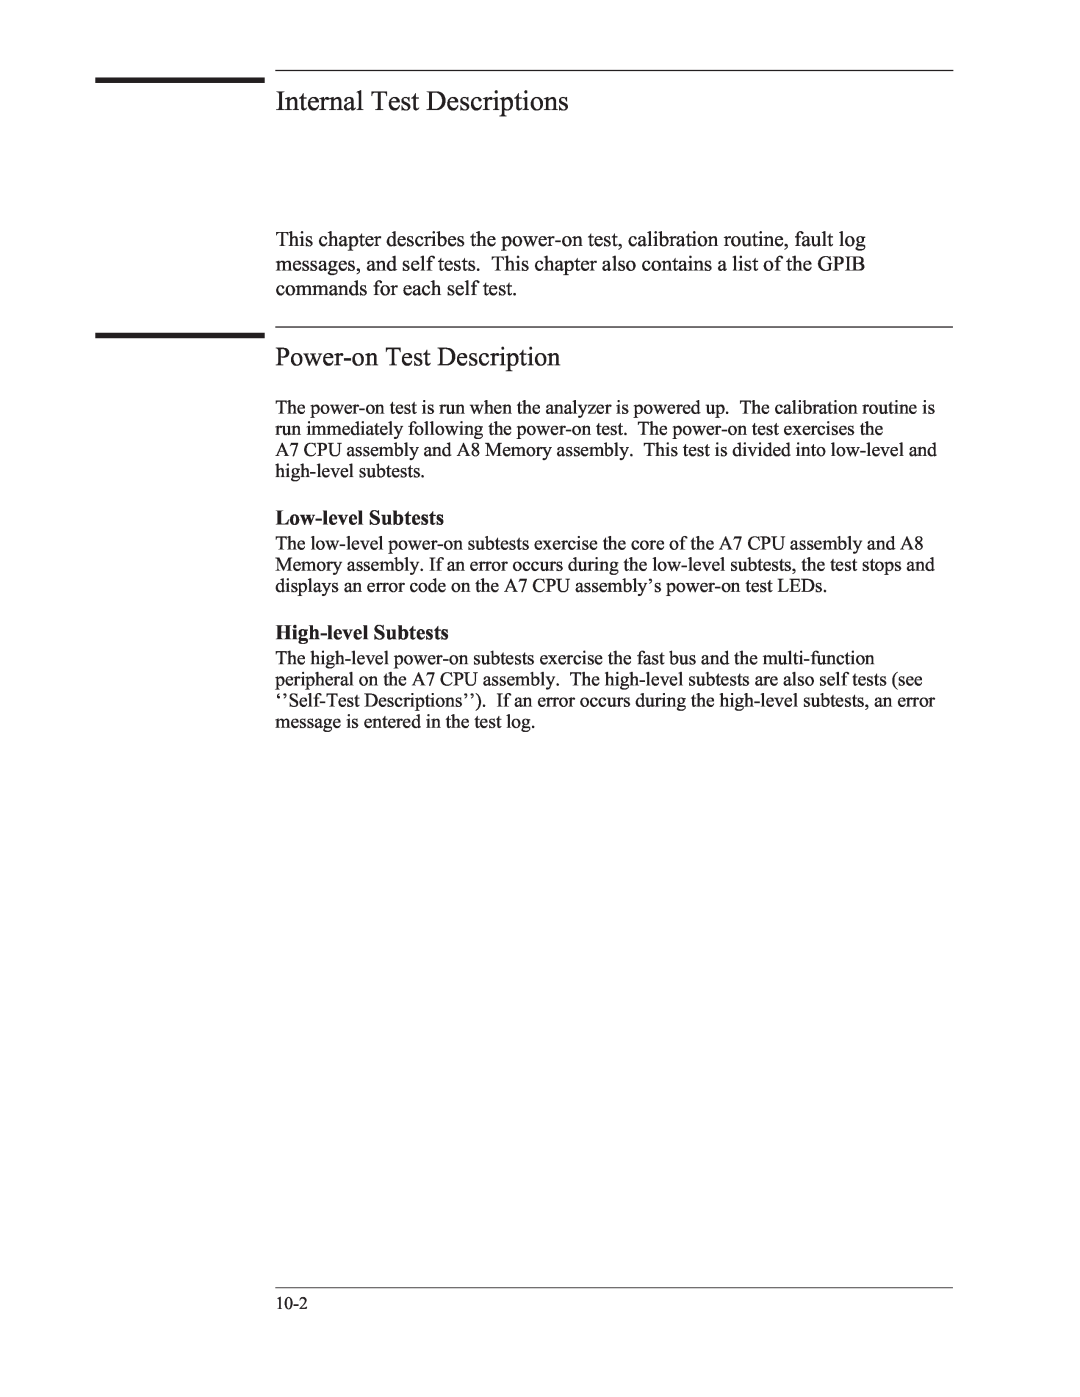 Agilent Technologies 35670-90066 manual Internal Test Descriptions, Power-onTest Description, Low-levelSubtests 